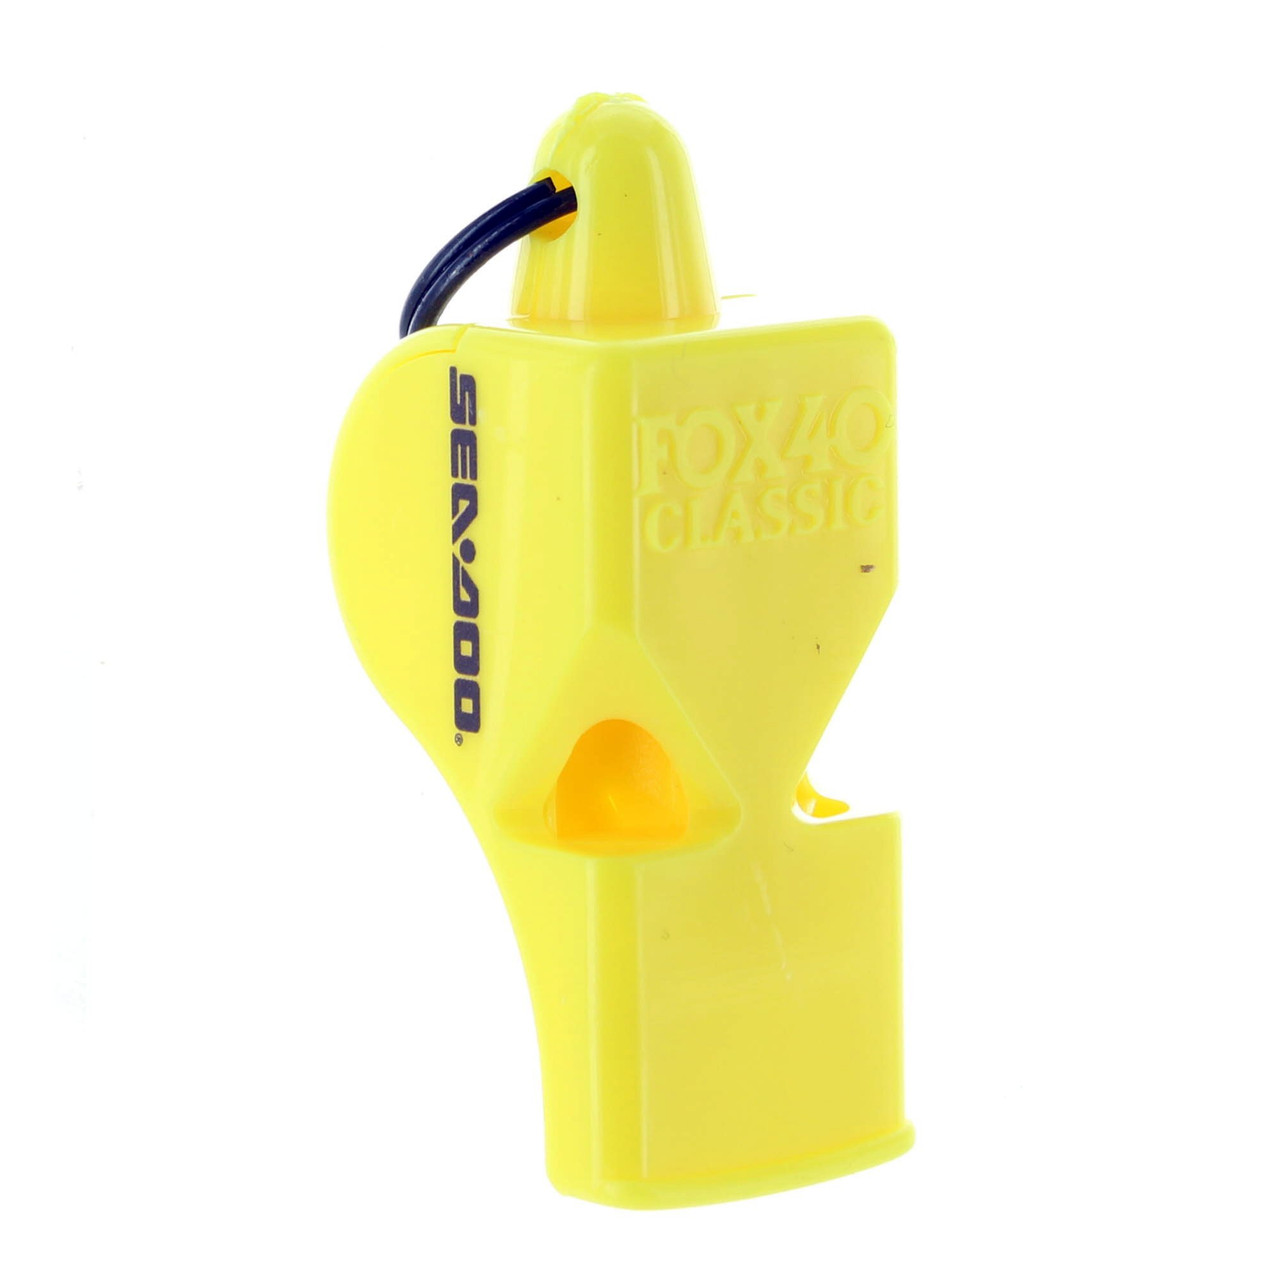 Sea-Doo New OEM Yellow Whistle, 295500554